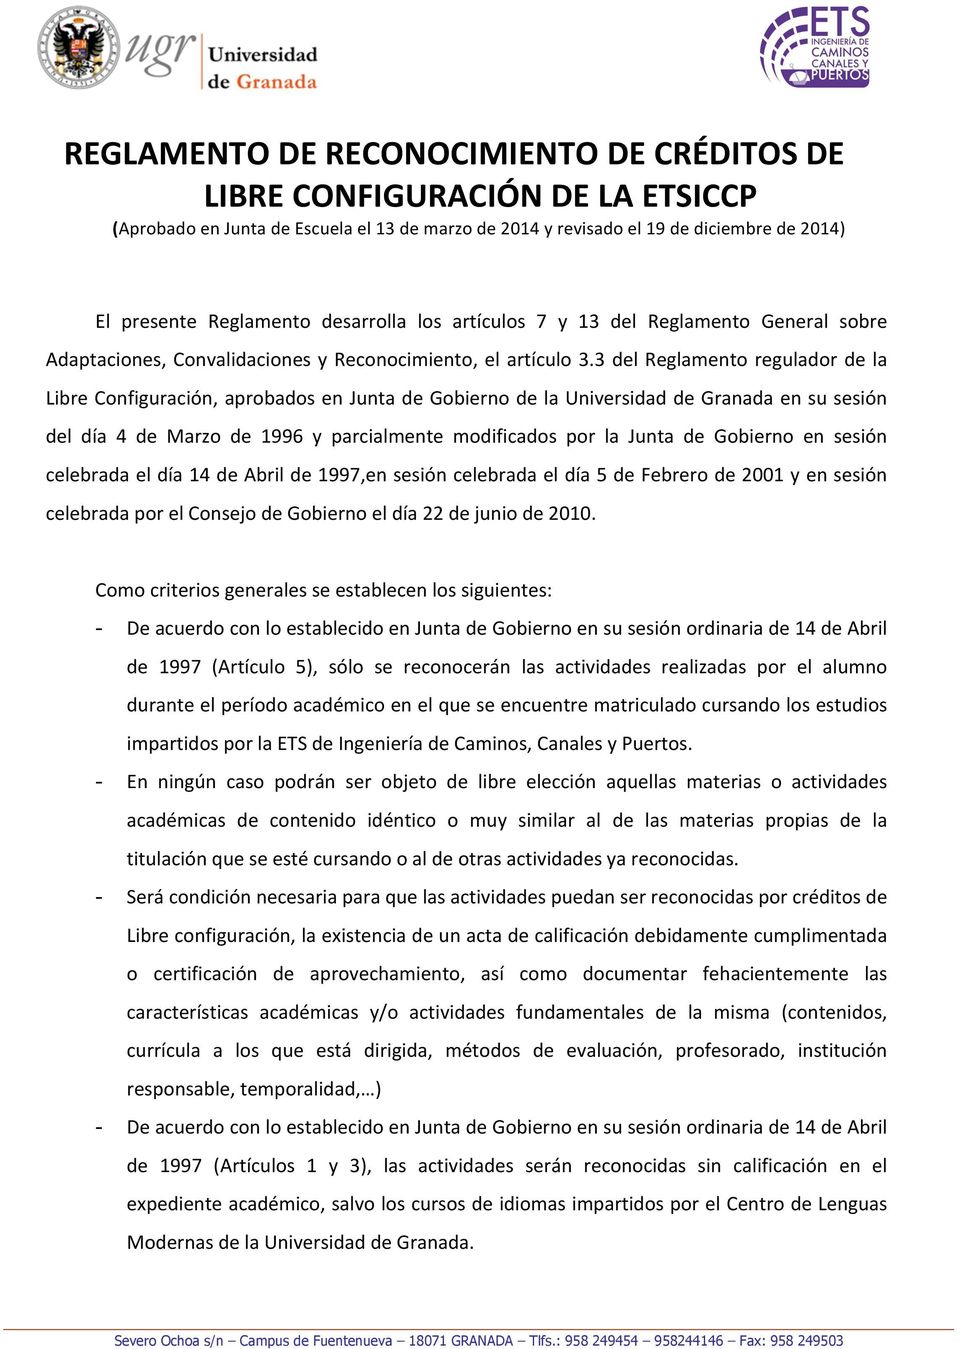 3 del Reglamento regulador de la Libre Configuración, aprobados en Junta de Gobierno de la Universidad de Granada en su sesión del día 4 de Marzo de 1996 y parcialmente modificados por la Junta de